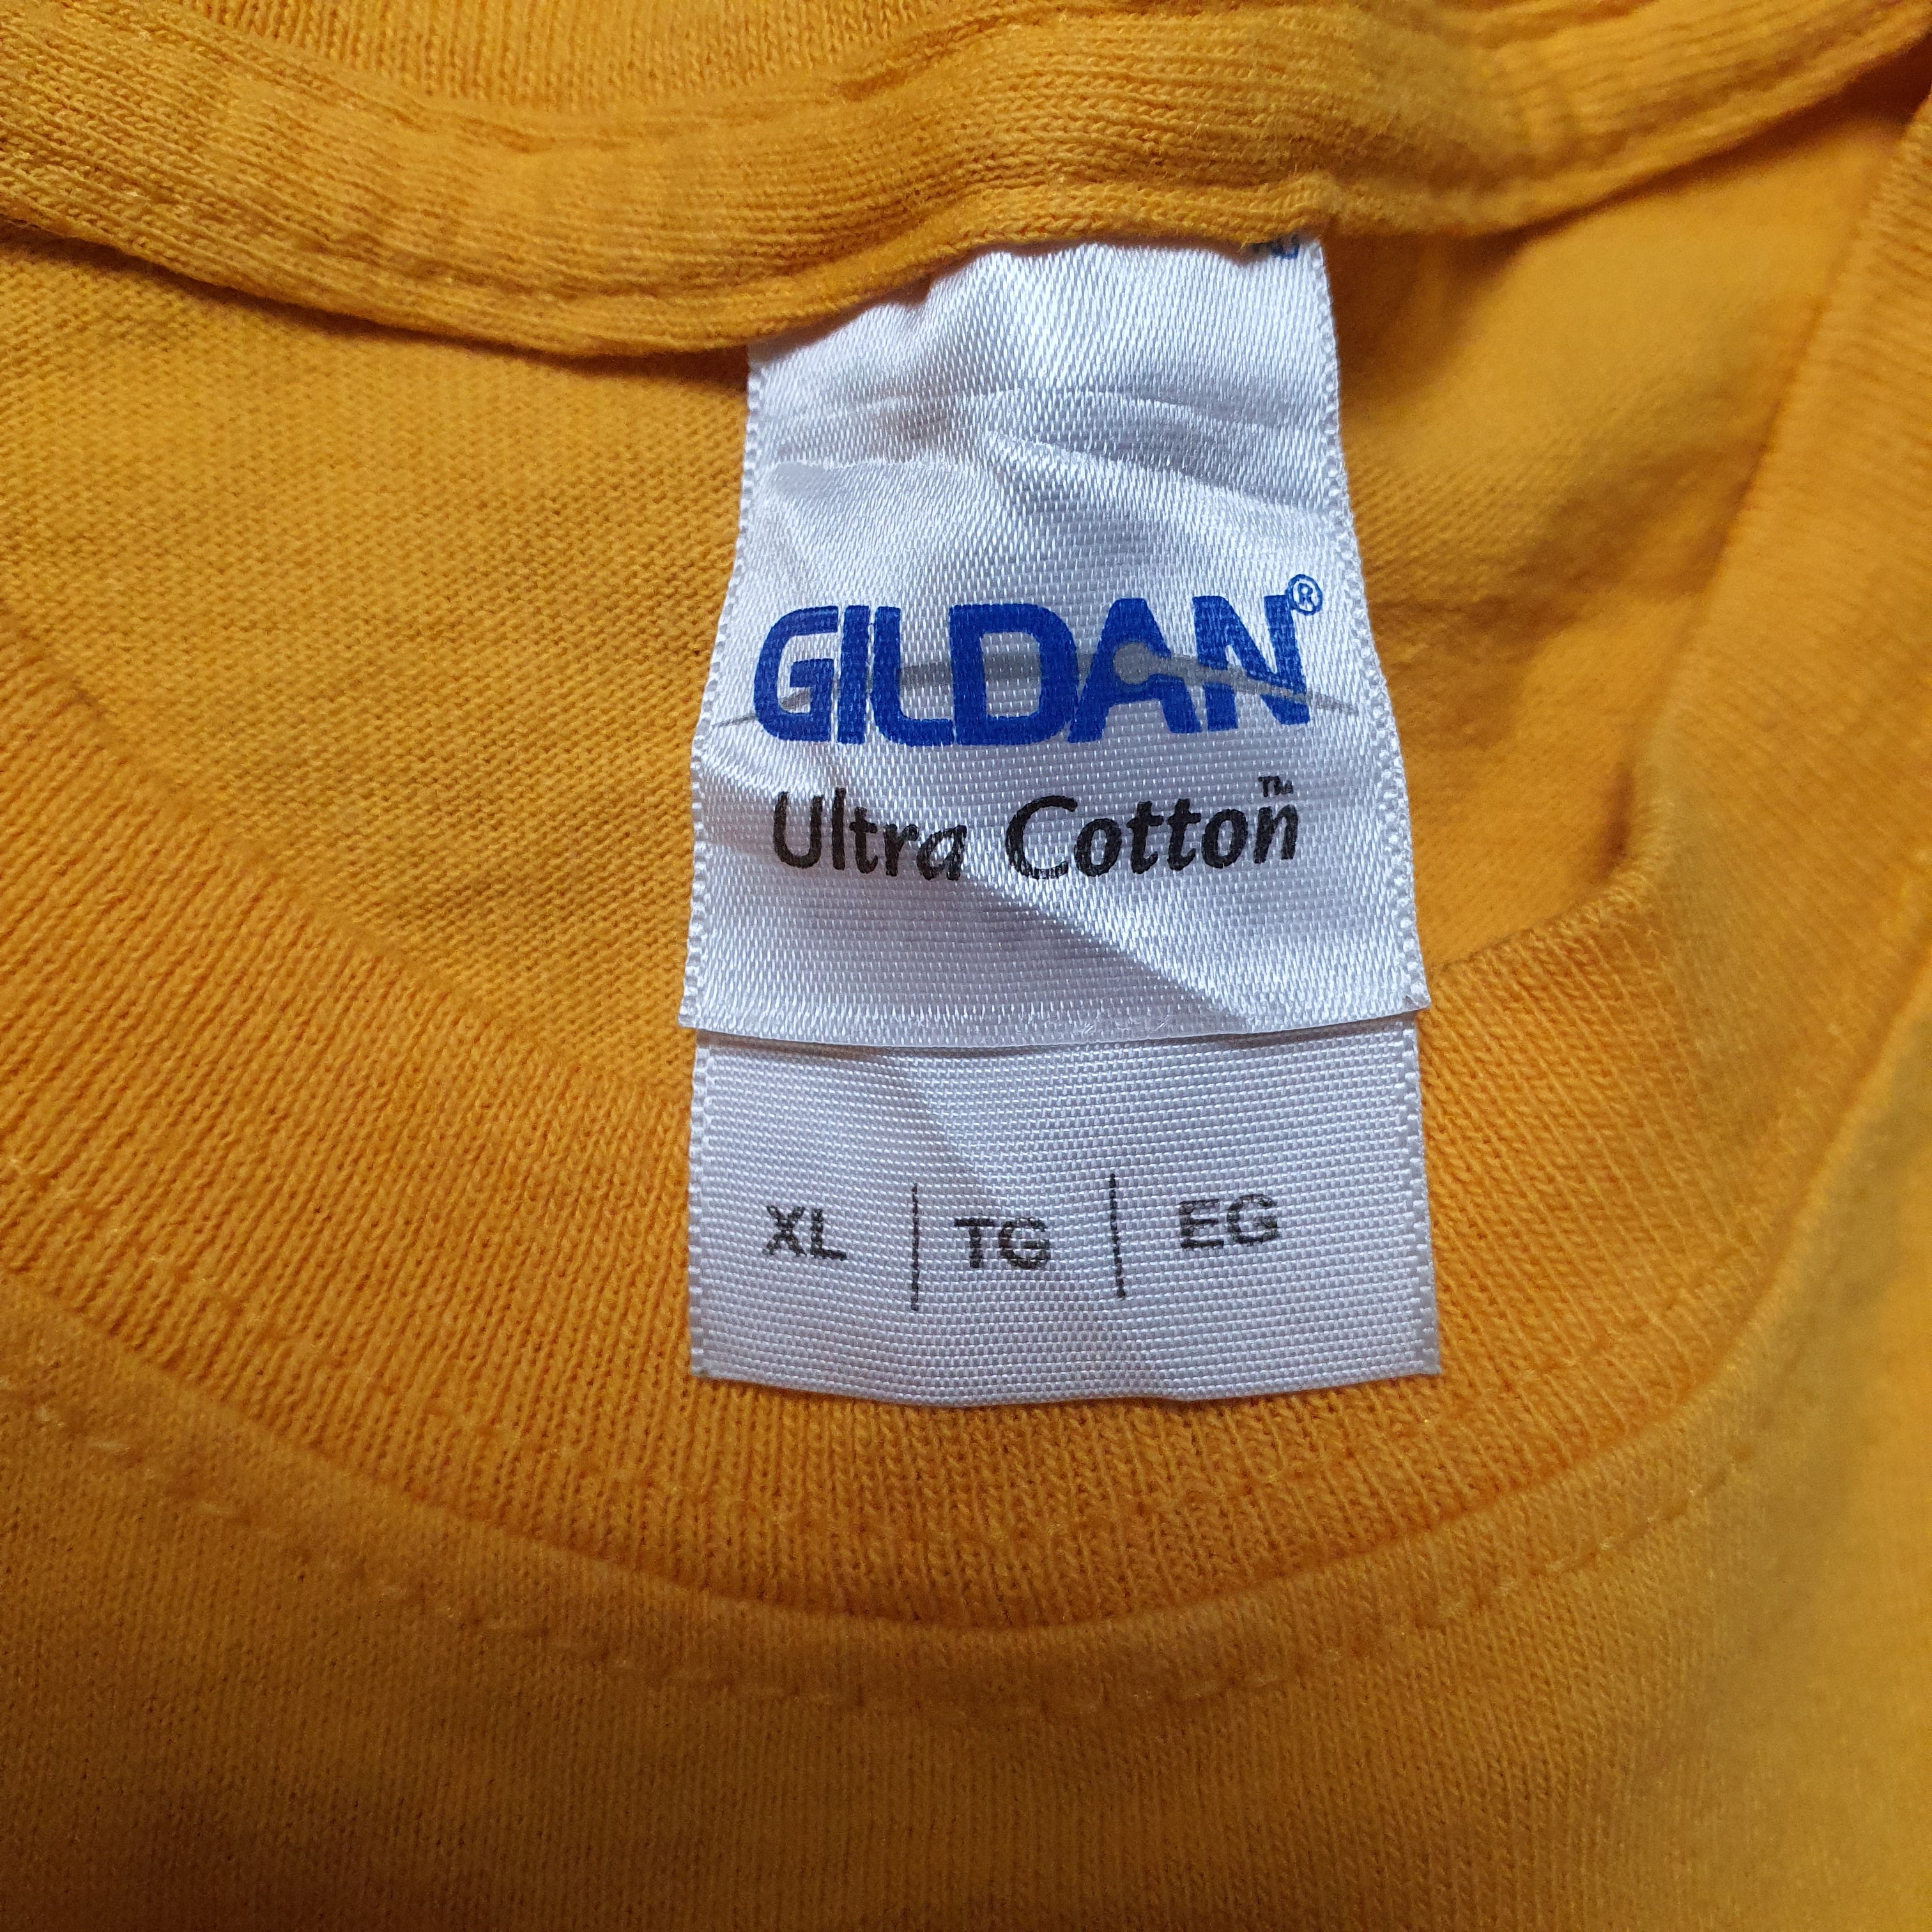 [M] Gildan Rose Bowl Game T-Shirt